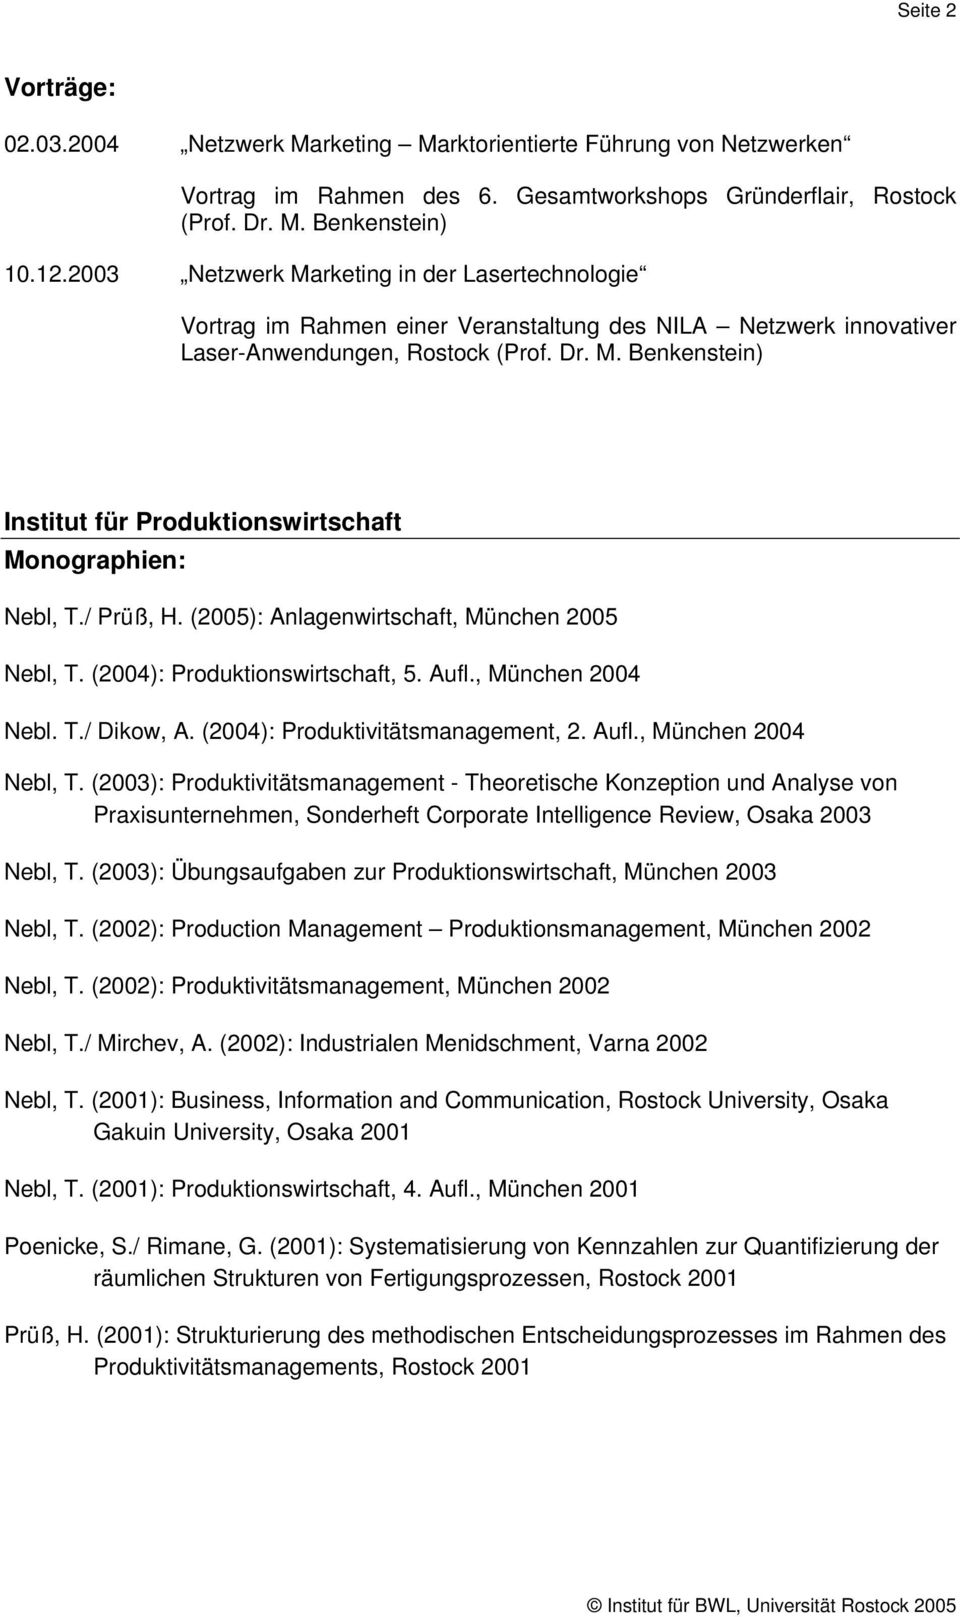 / Prüß, H. (2005): Anlagenwirtschaft, München 2005 Nebl, T. (2004): Produktionswirtschaft, 5. Aufl., München 2004 Nebl. T./ Dikow, A. (2004): Produktivitätsmanagement, 2. Aufl., München 2004 Nebl, T.